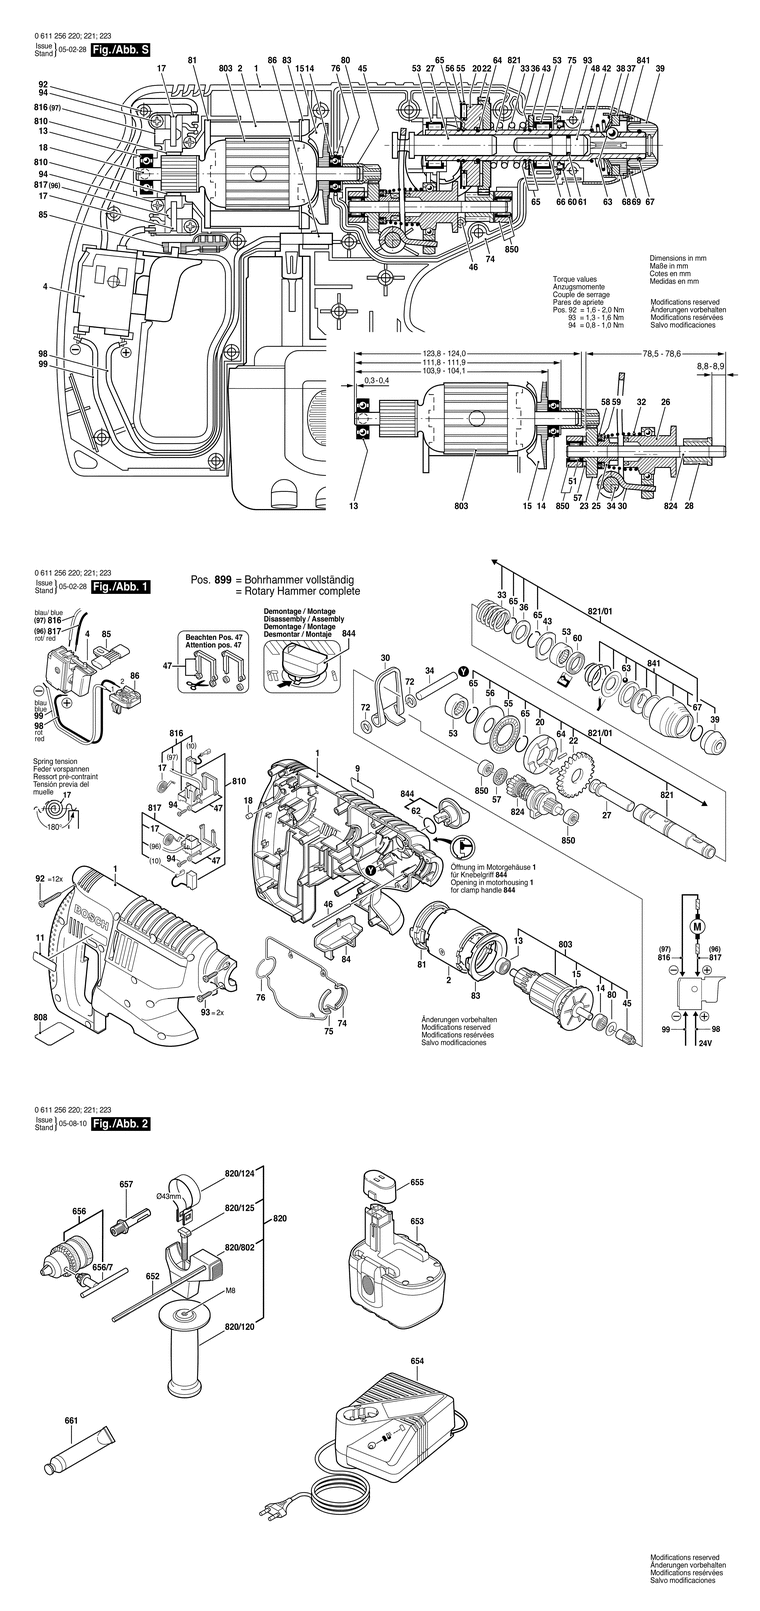 Запчасти, схема и деталировка Bosch GBH 24 V (ТИП 0611256220) (ЧАСТЬ 1)